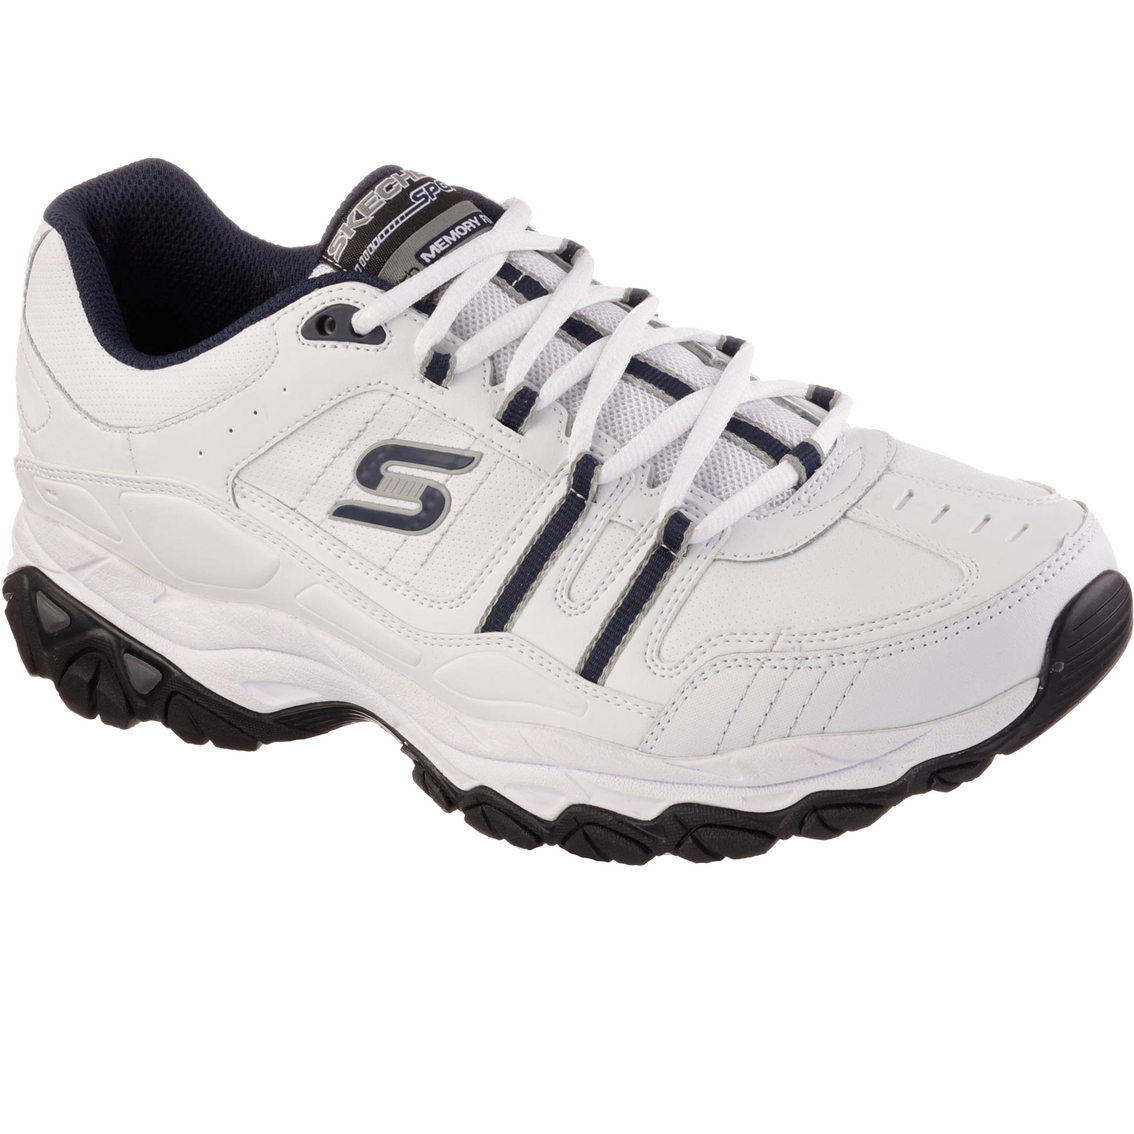 Skechers Men's Sport Shoes With Memory Foam | Walking | Shoes | Shop ...